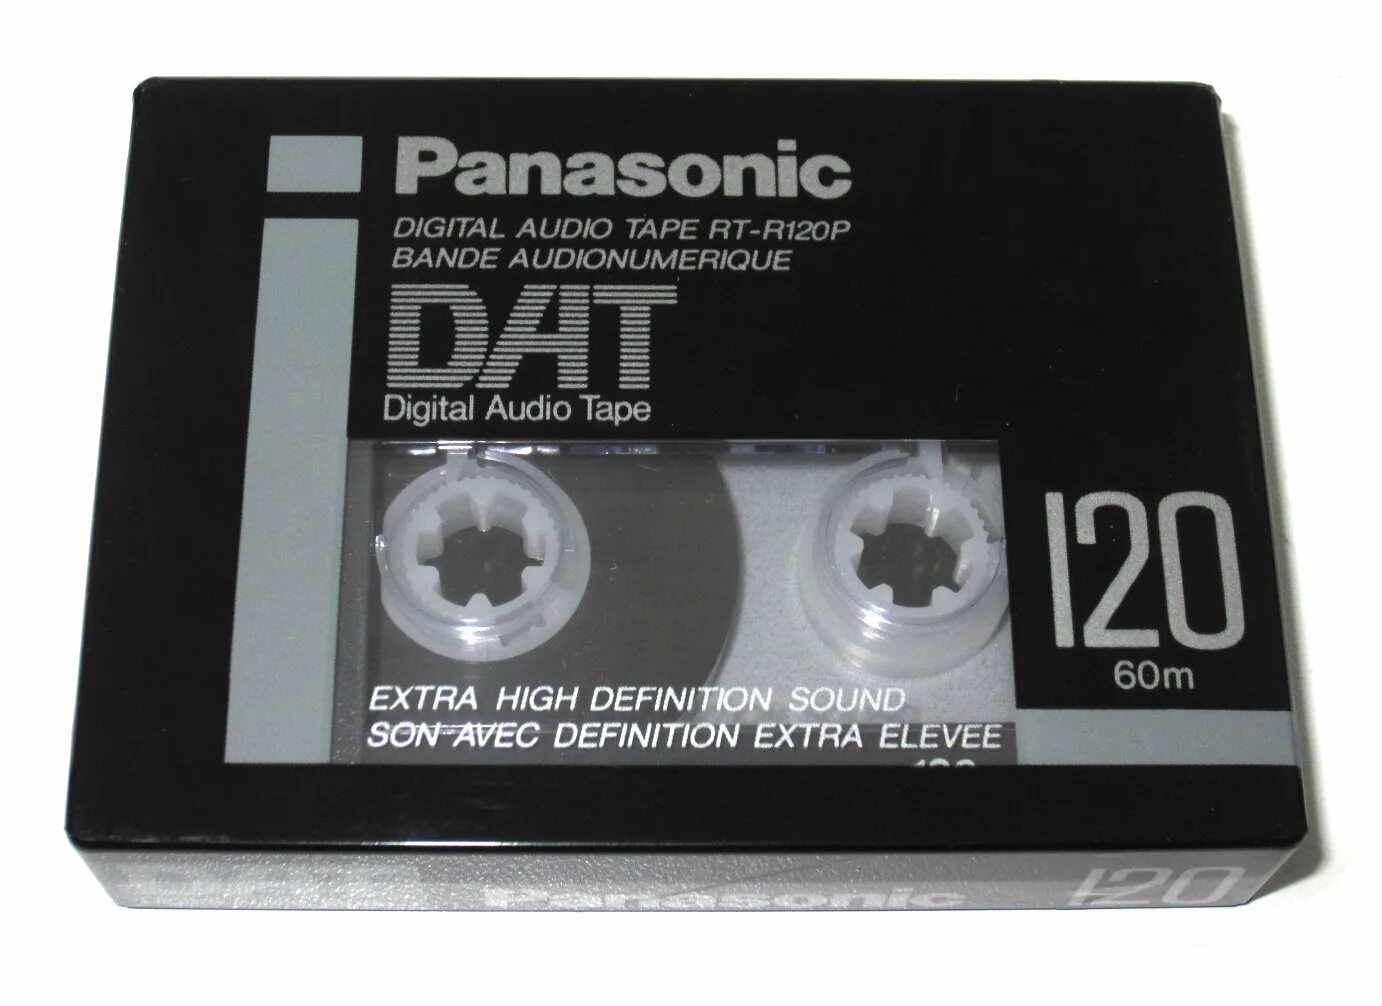 Цифровая кассета. Кассета BASF 120. Dat Fuji r120 кассета. DDS кассеты 600 ГБ. Dat кассета 160 ГБ.